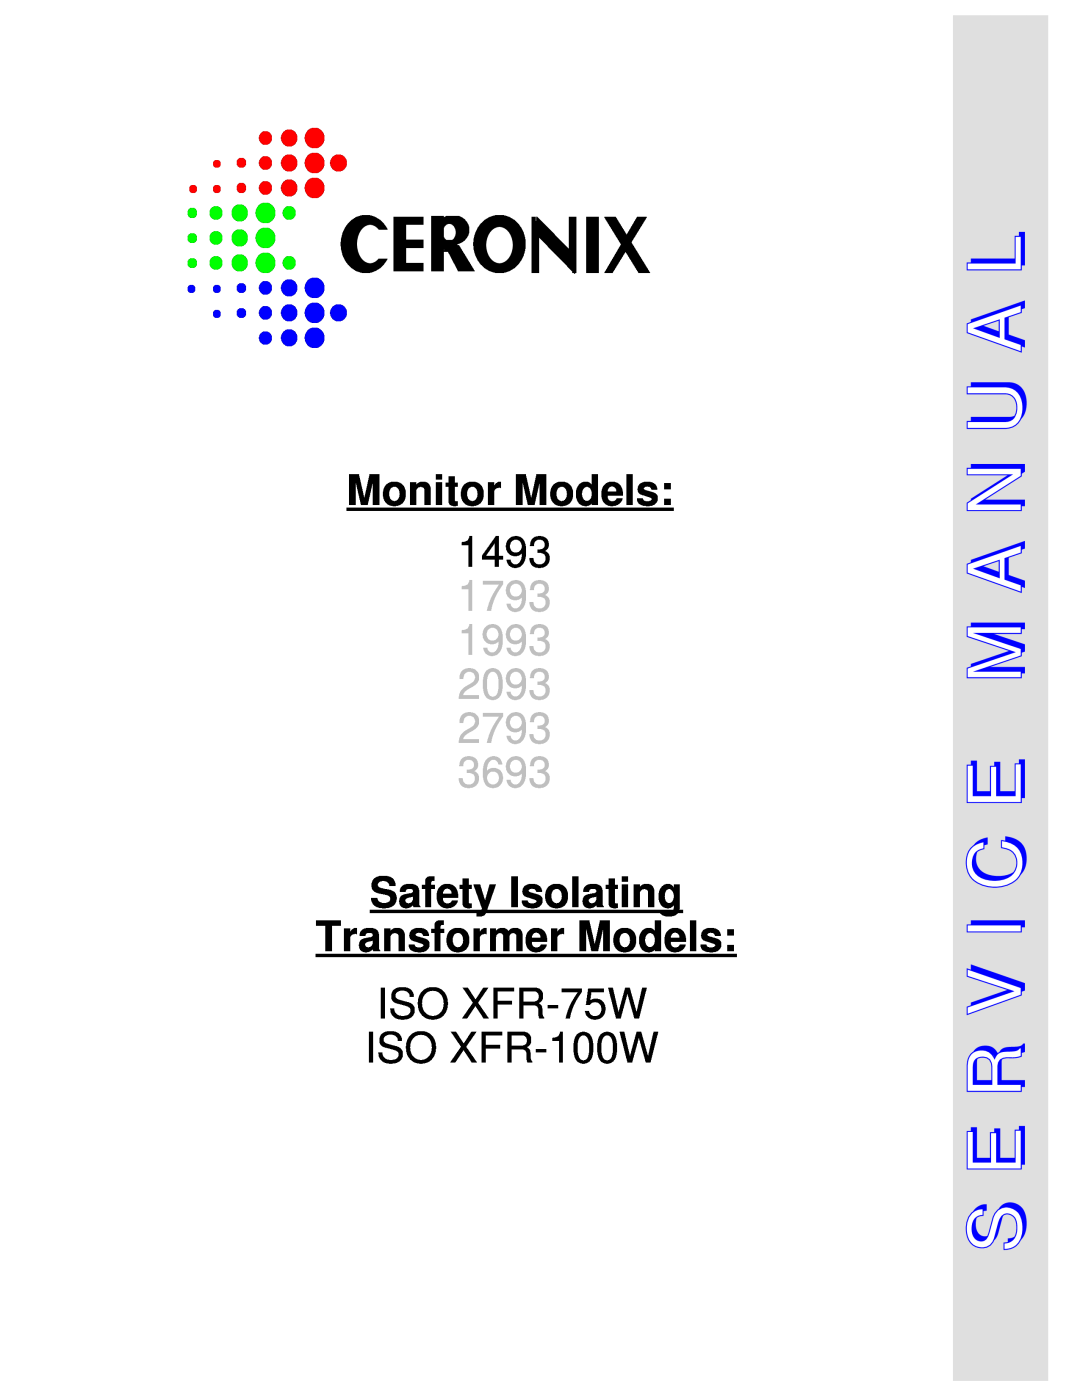 Genius manual M A N U A L S E R V I C E, Monitor Models, 1493, 1793 1993 2093 2793 3693, ISO XFR-75W ISO XFR-100W 